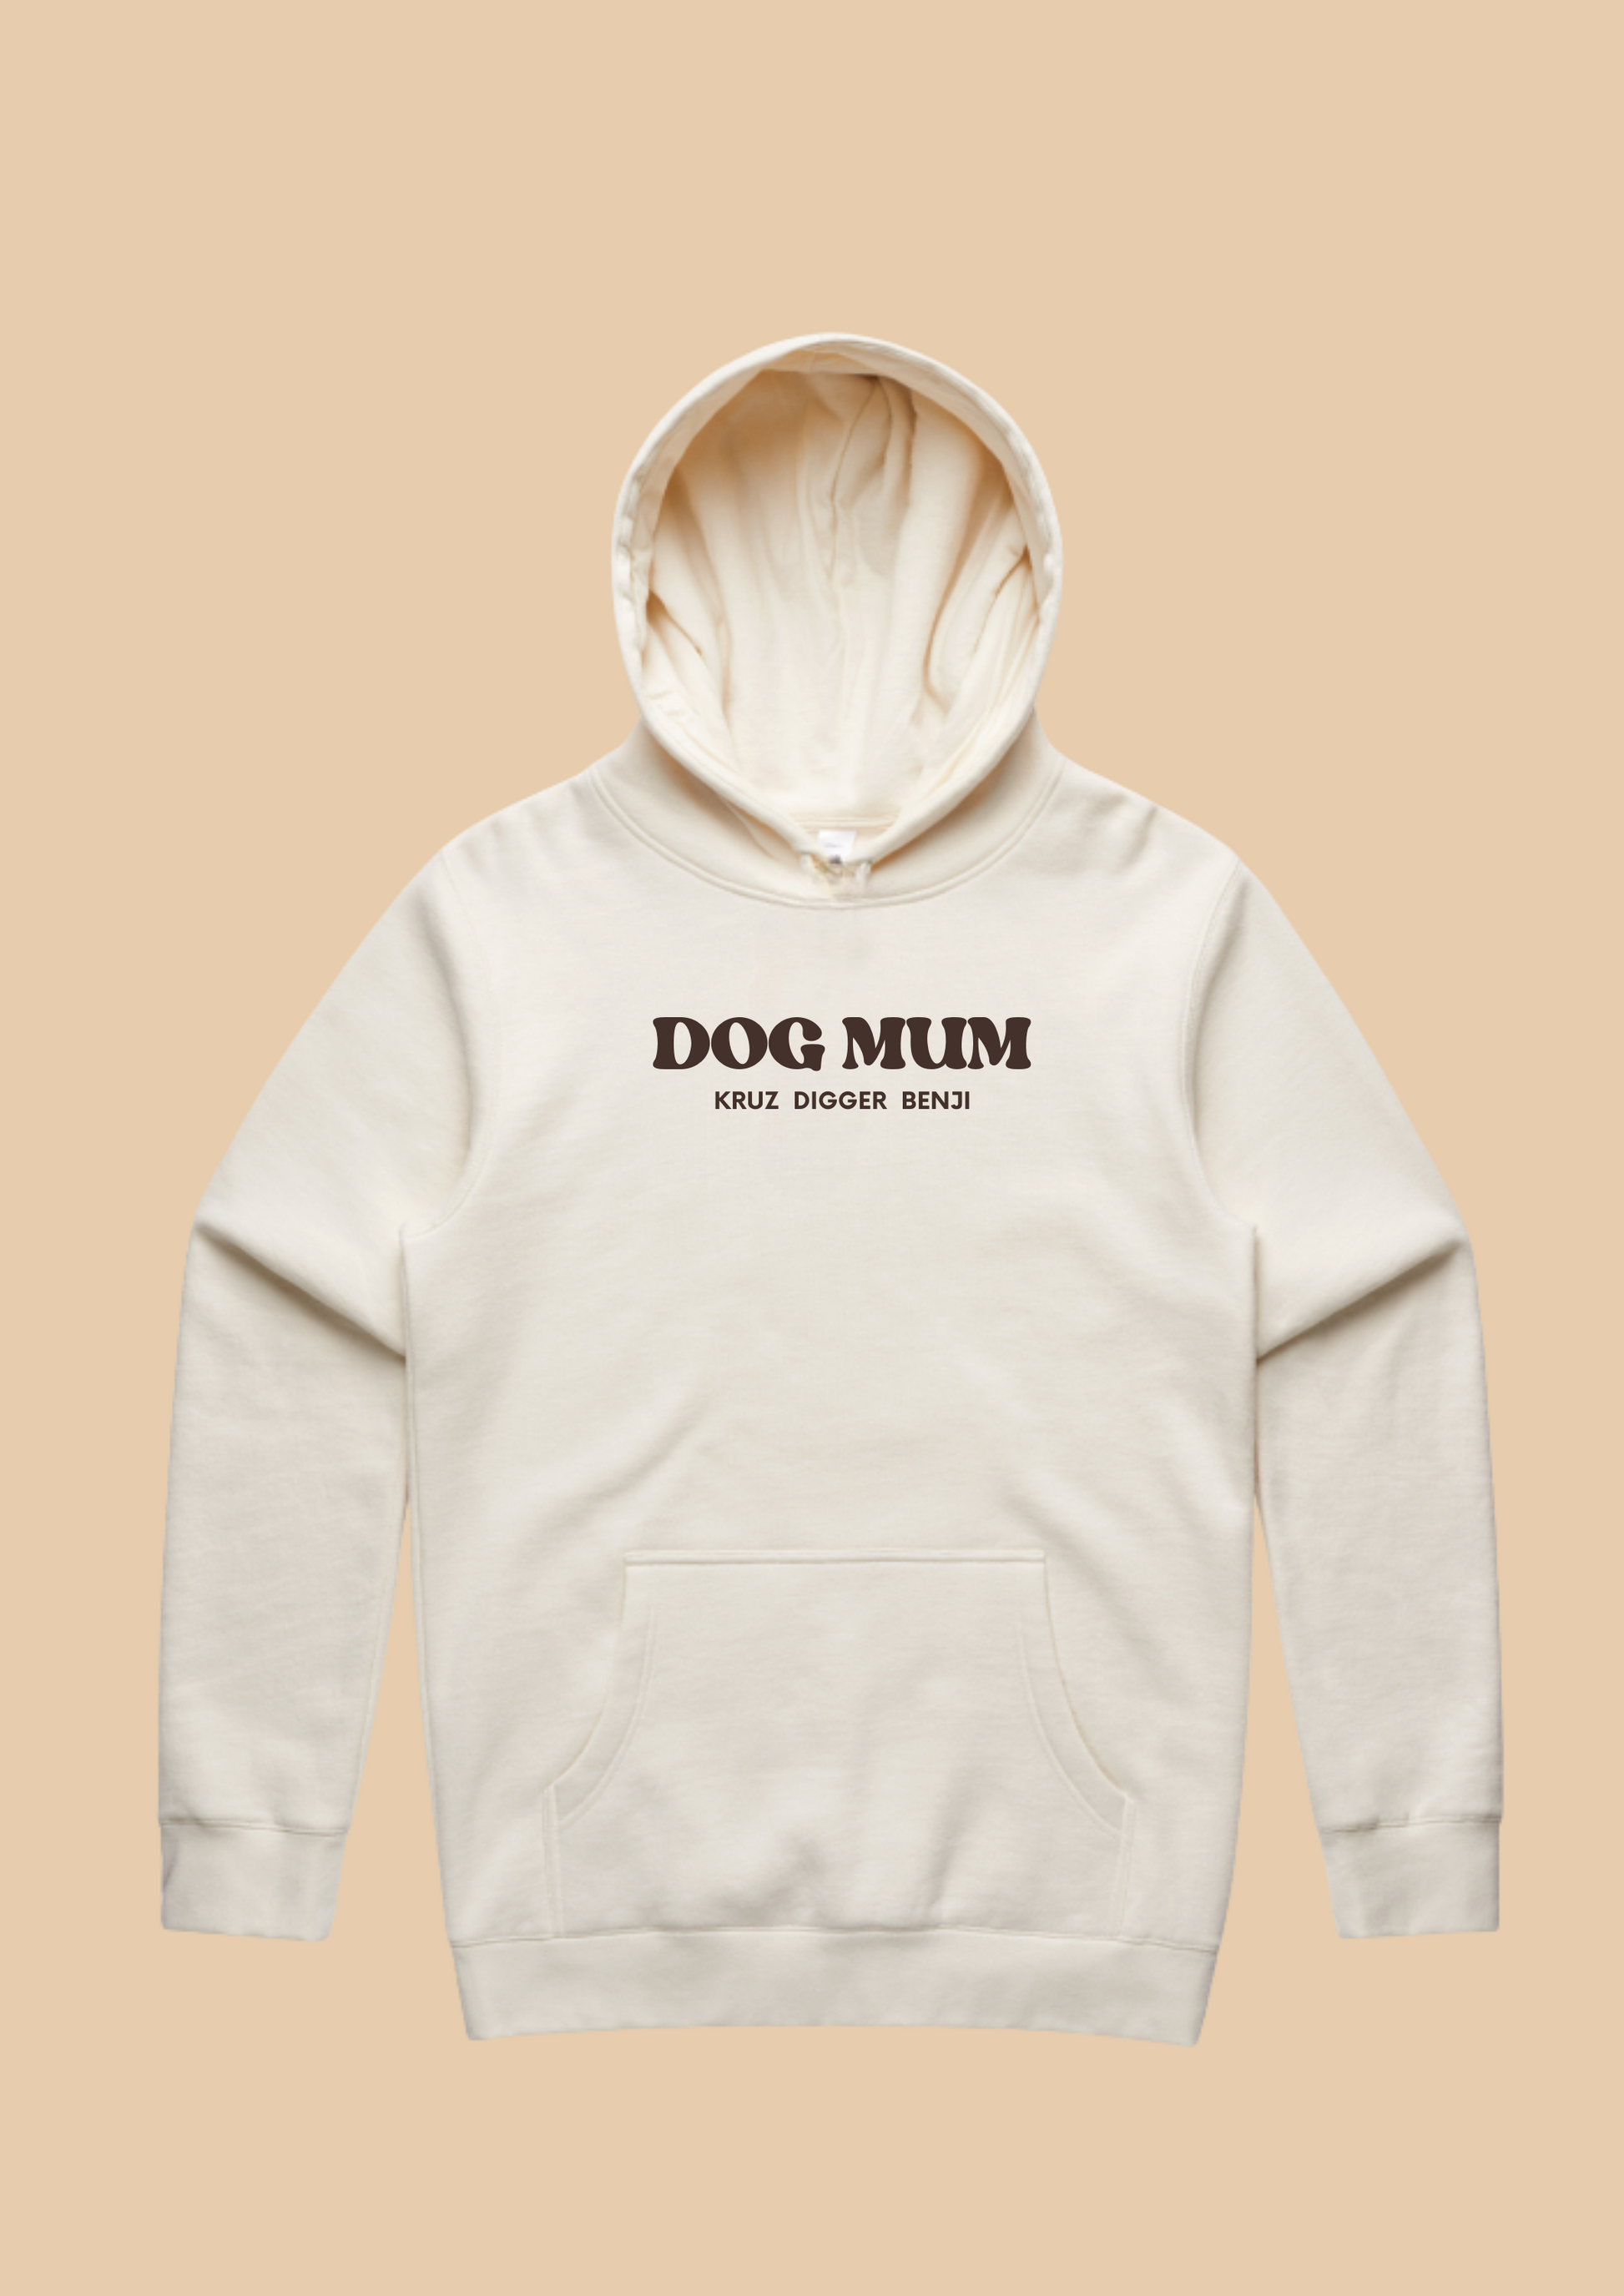 dog mum quote hoodie dog lover hoodie customisable custom dog mum gift